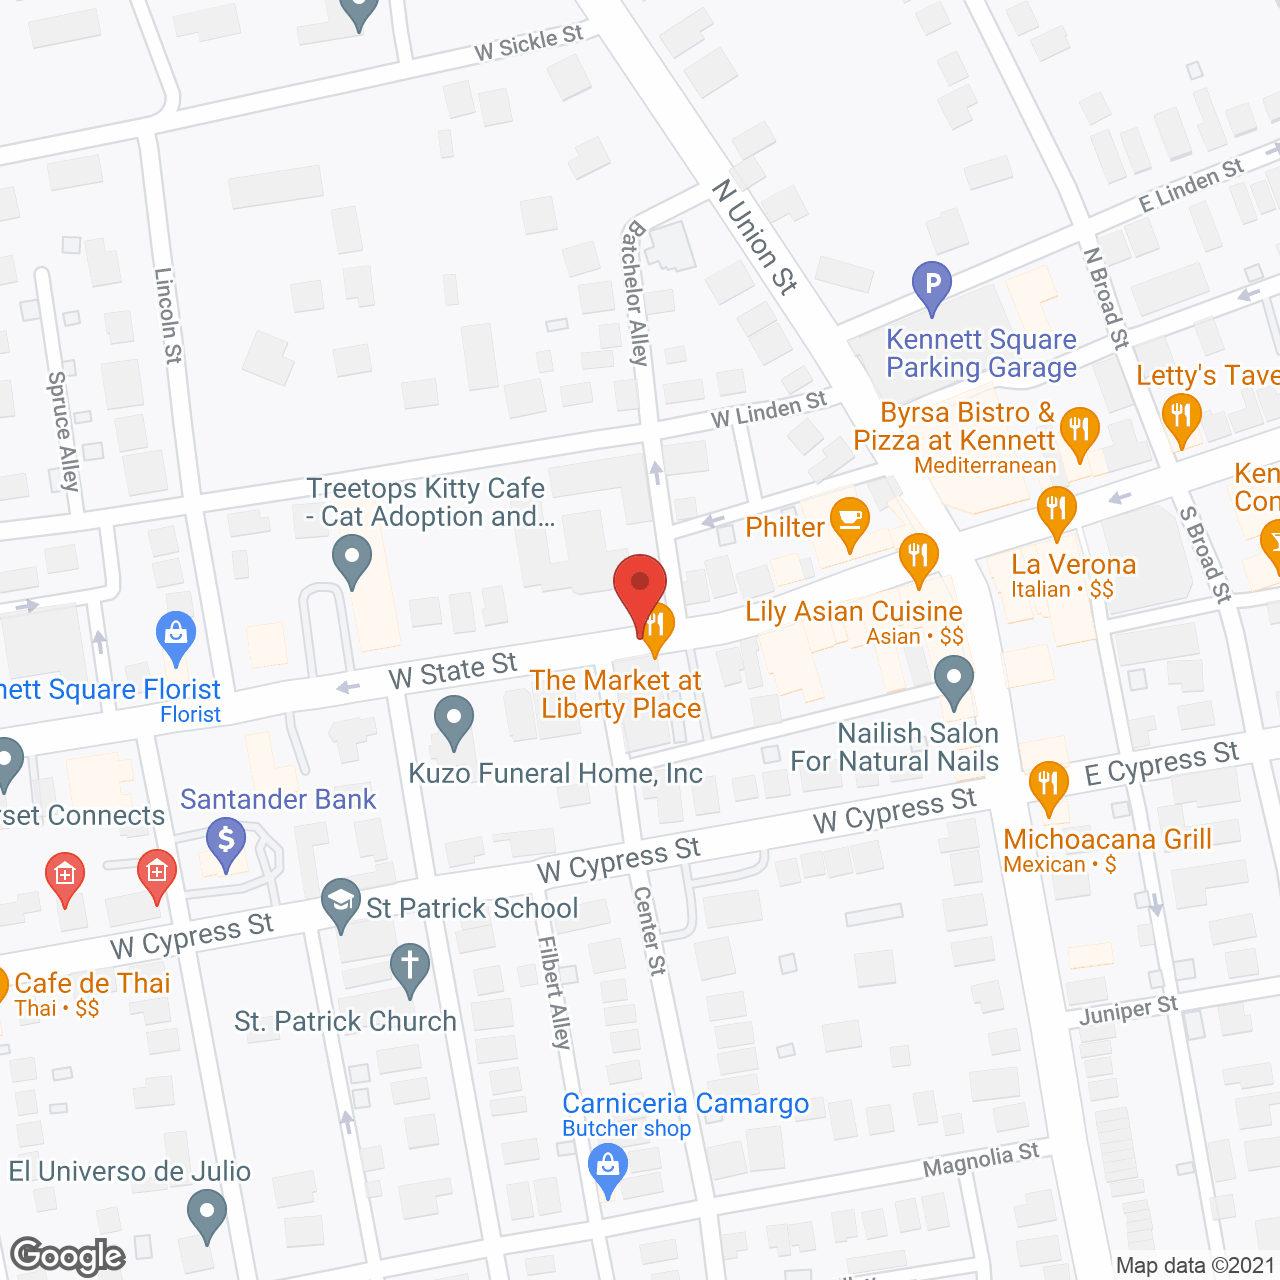 Friends Home in Kennett in google map